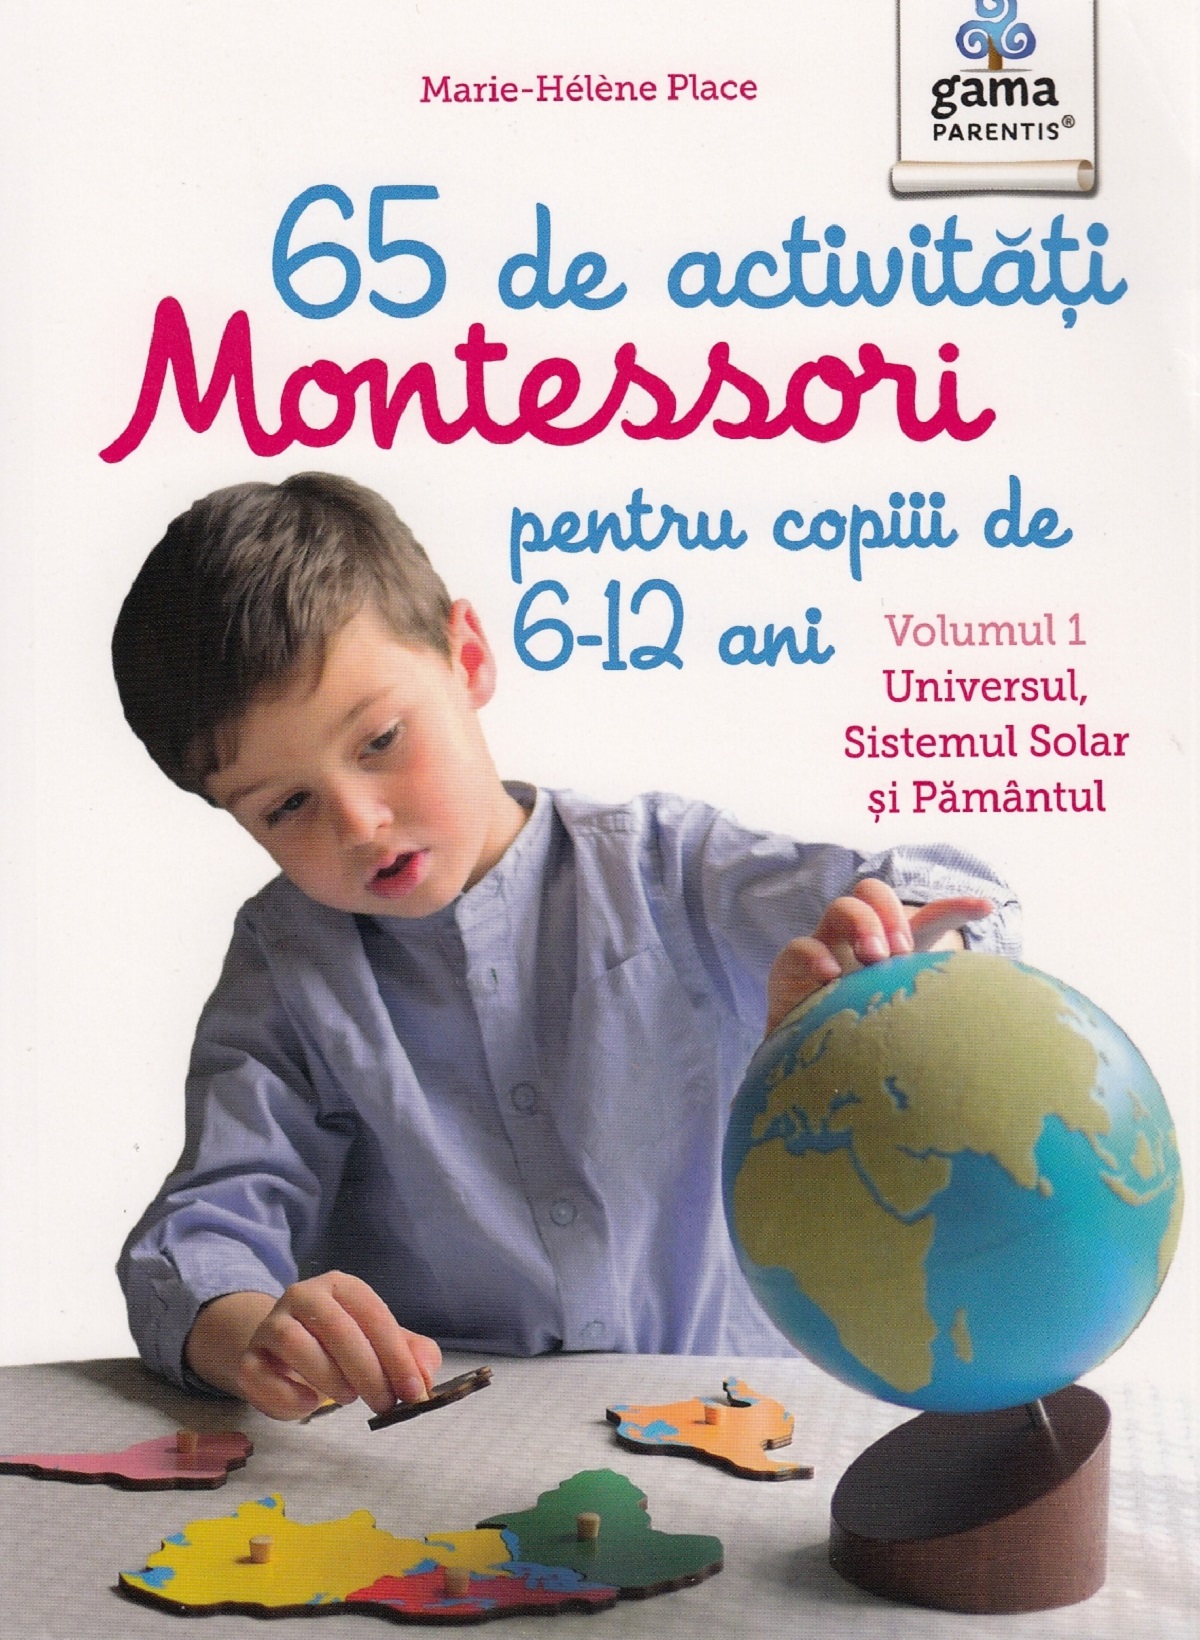 65 de activitati Montessori pentru copiii de 6-12 ani. Vol.1: Universul, Sistemul Solar si Pamantul - Marie-Helene Place